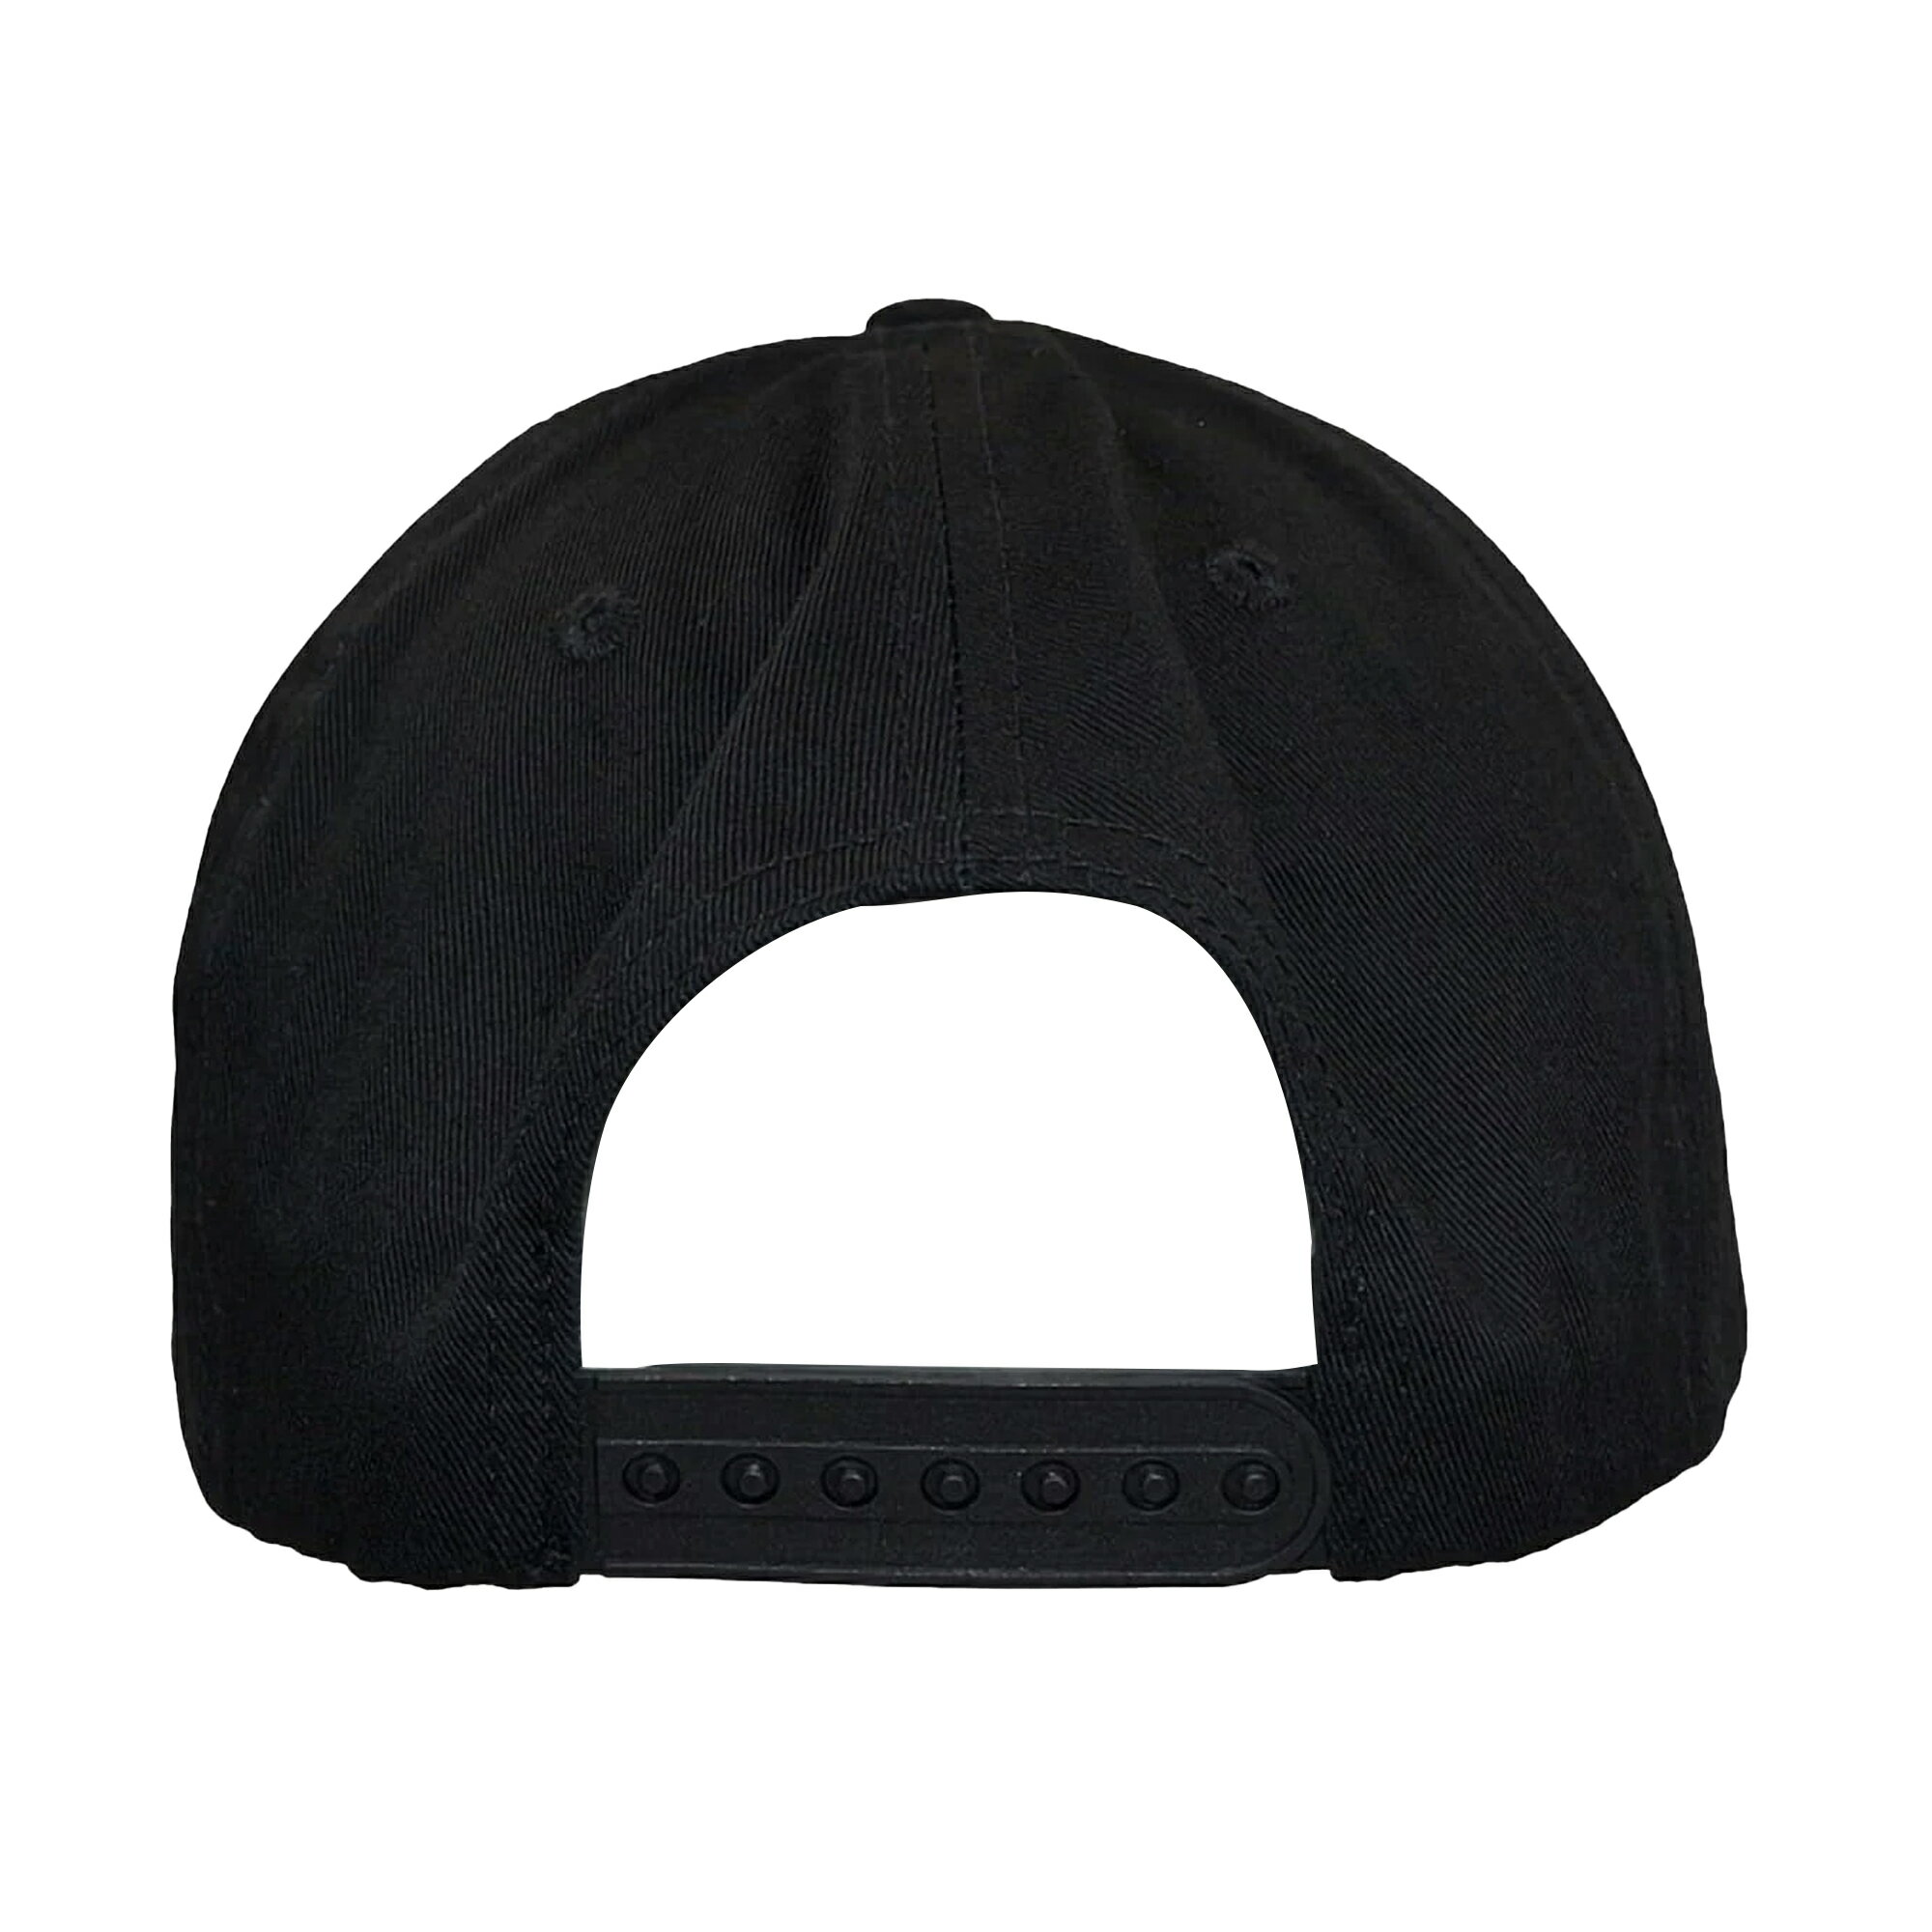 (ウータン・クラン) Wu-Tang Clan オフィシャル商品 ユニセックス ロゴ キャップ スナップバック 帽子 ハット 